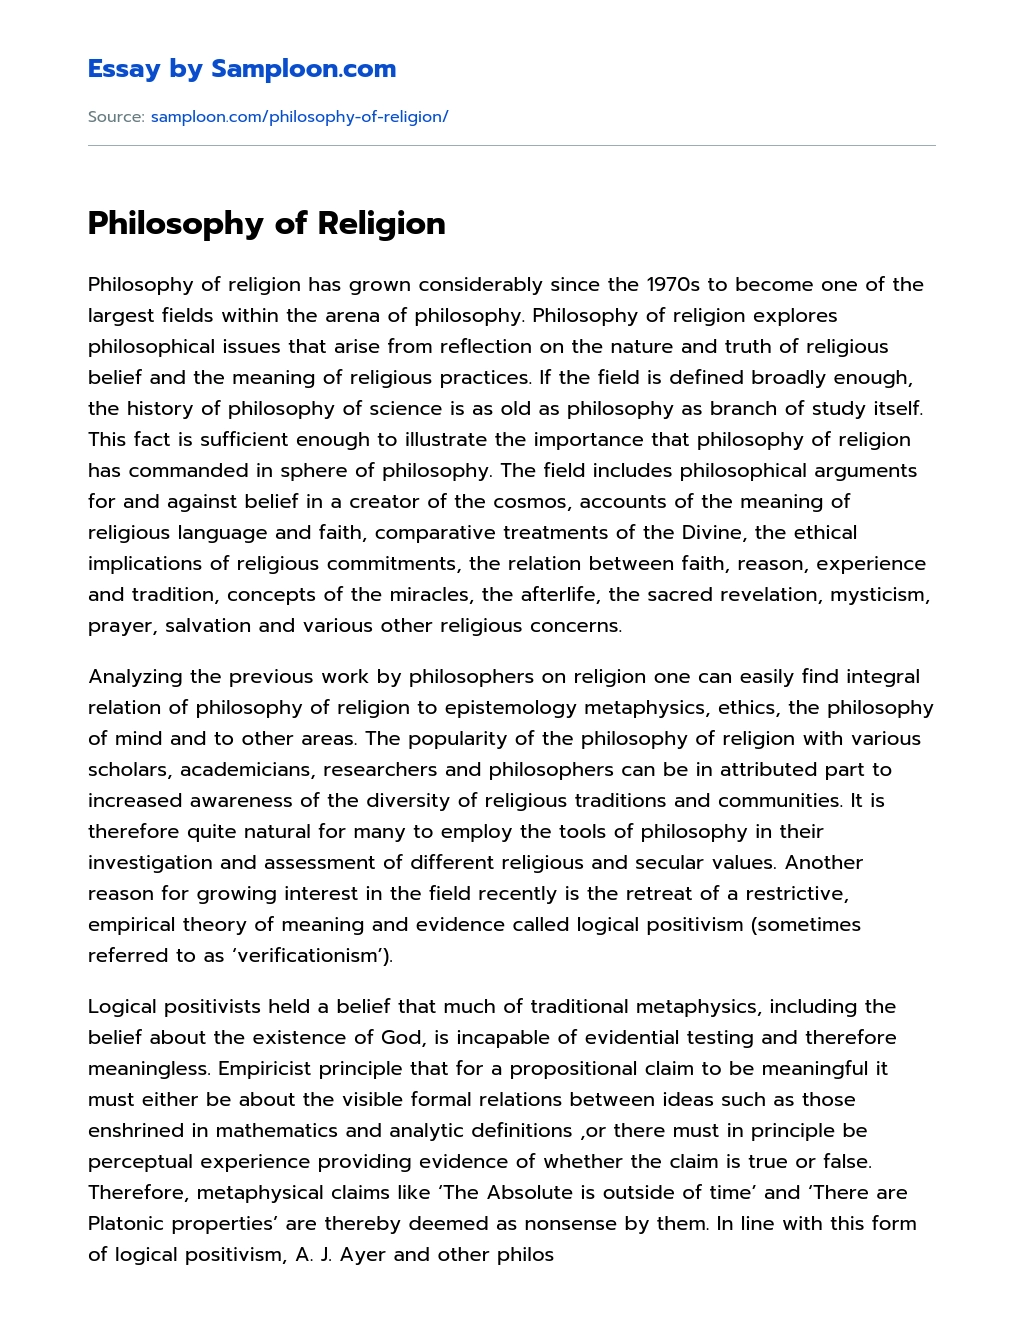 Philosophy of Religion essay